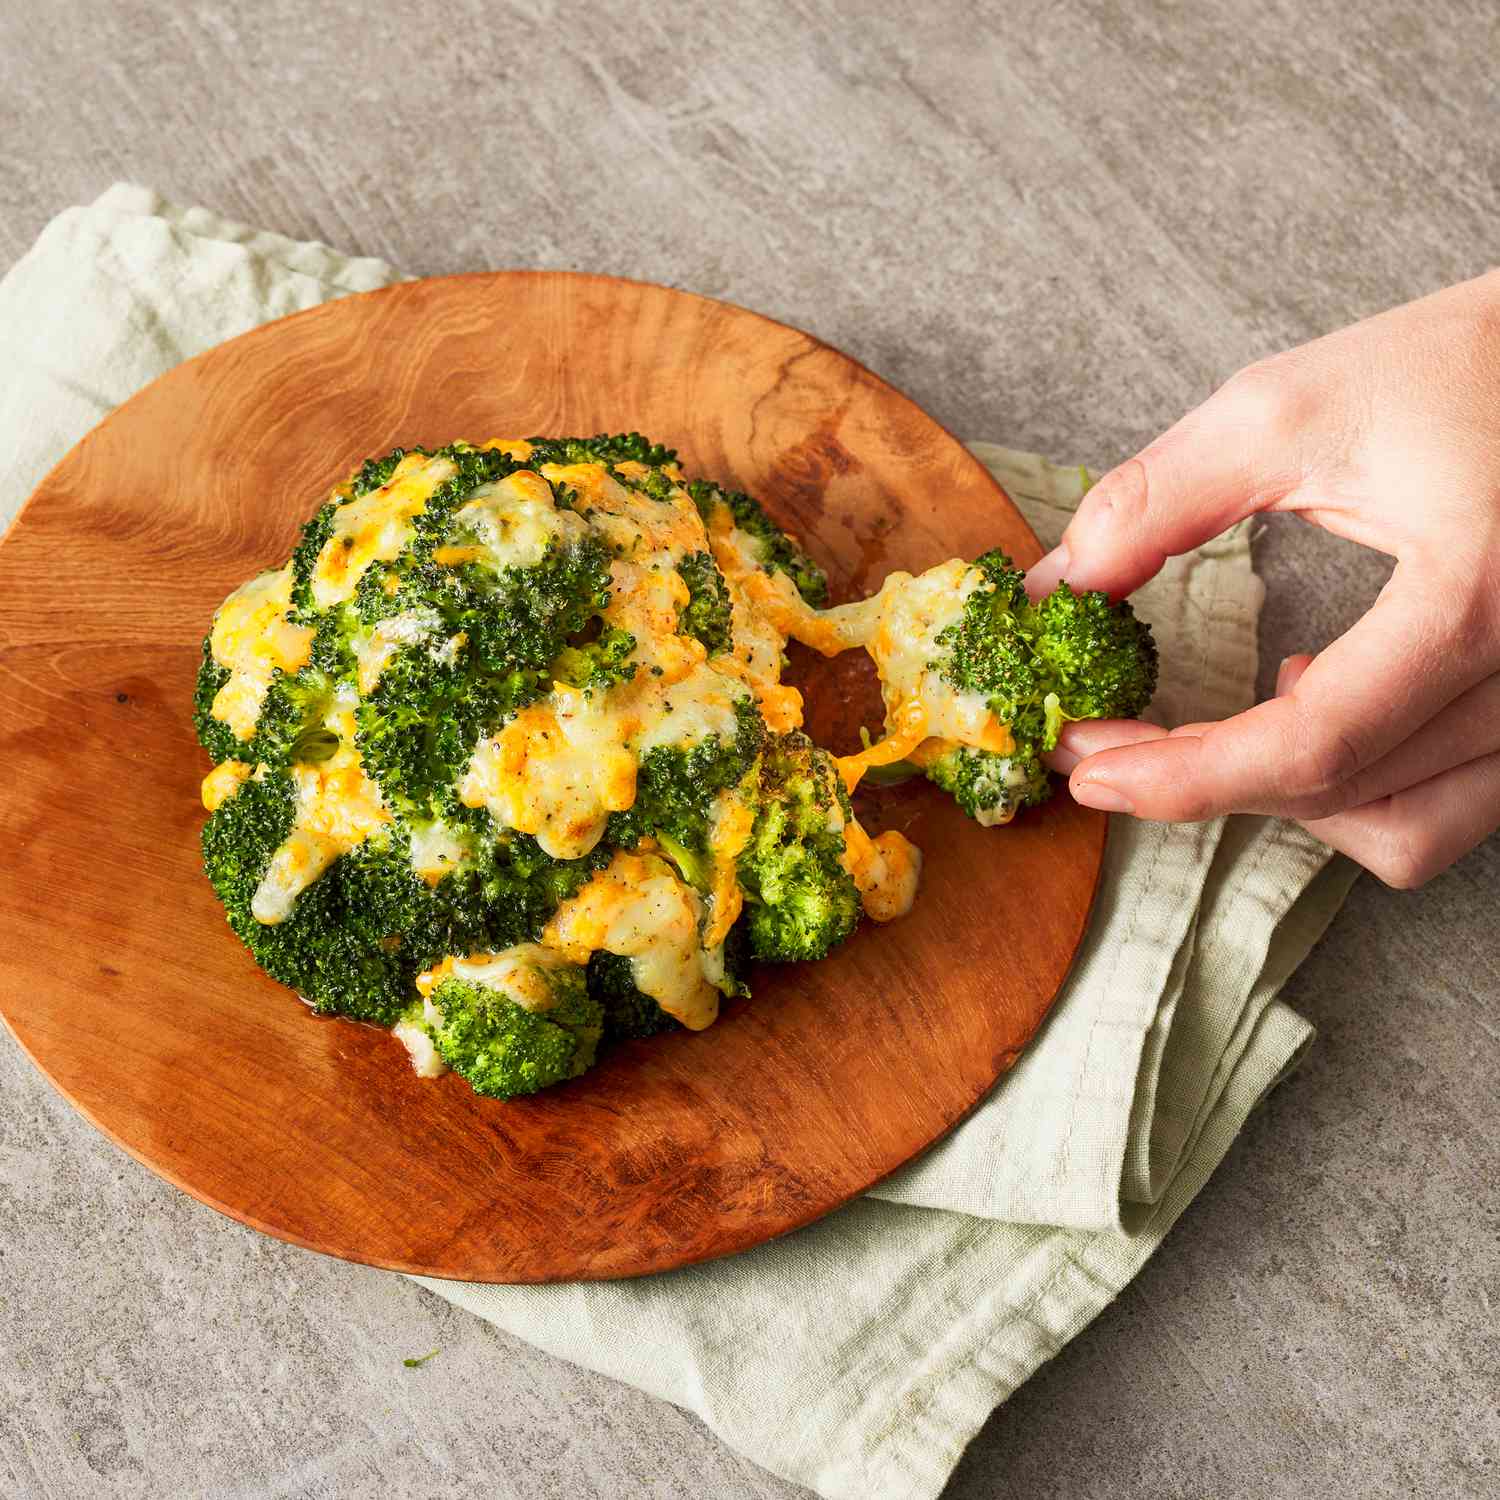 Foto de receta del brócoli con queso cheddar servido en una fuente.